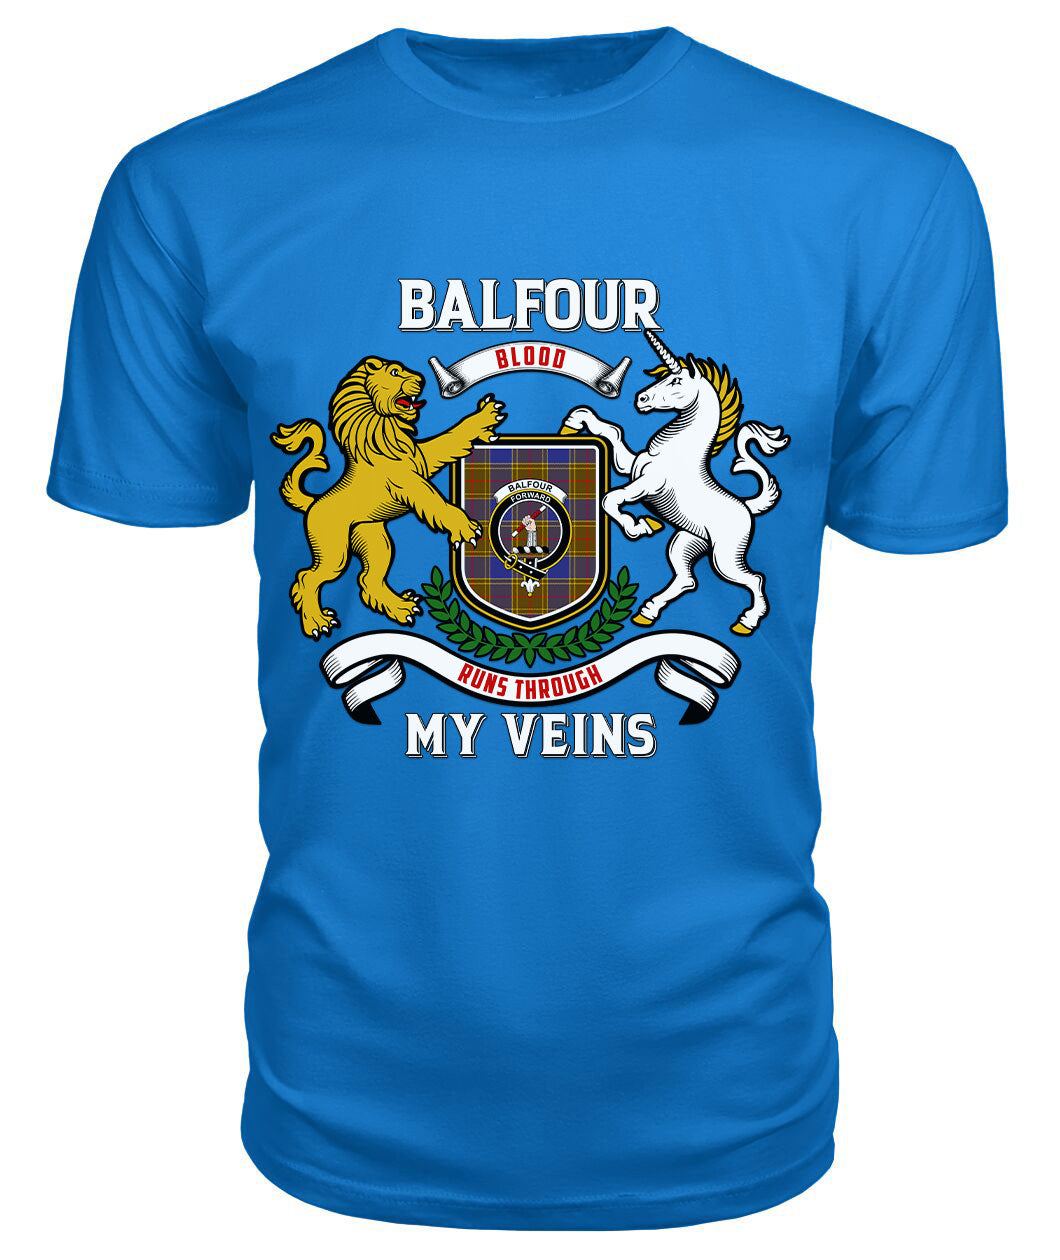 Balfour Modern Tartan Crest 2D T-shirt - Blood Runs Through My Veins Style